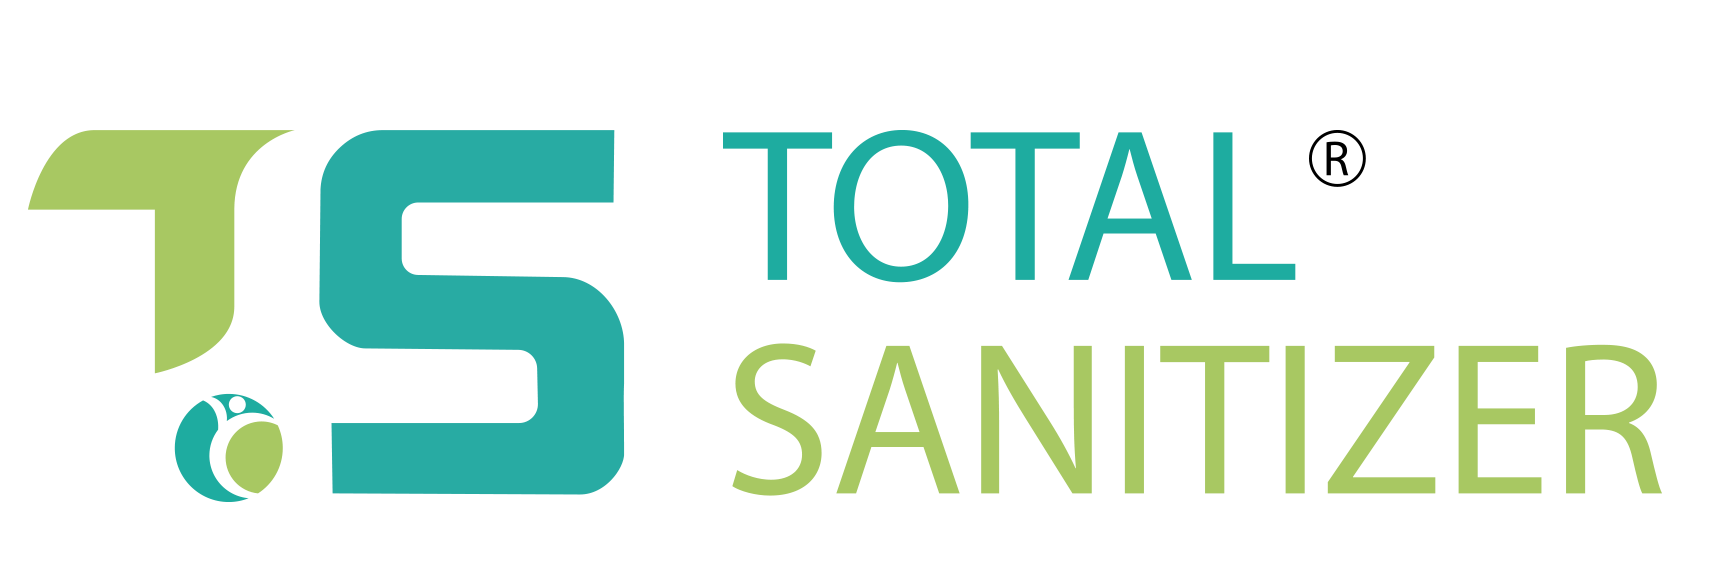 Total Sanitizer Name Logo